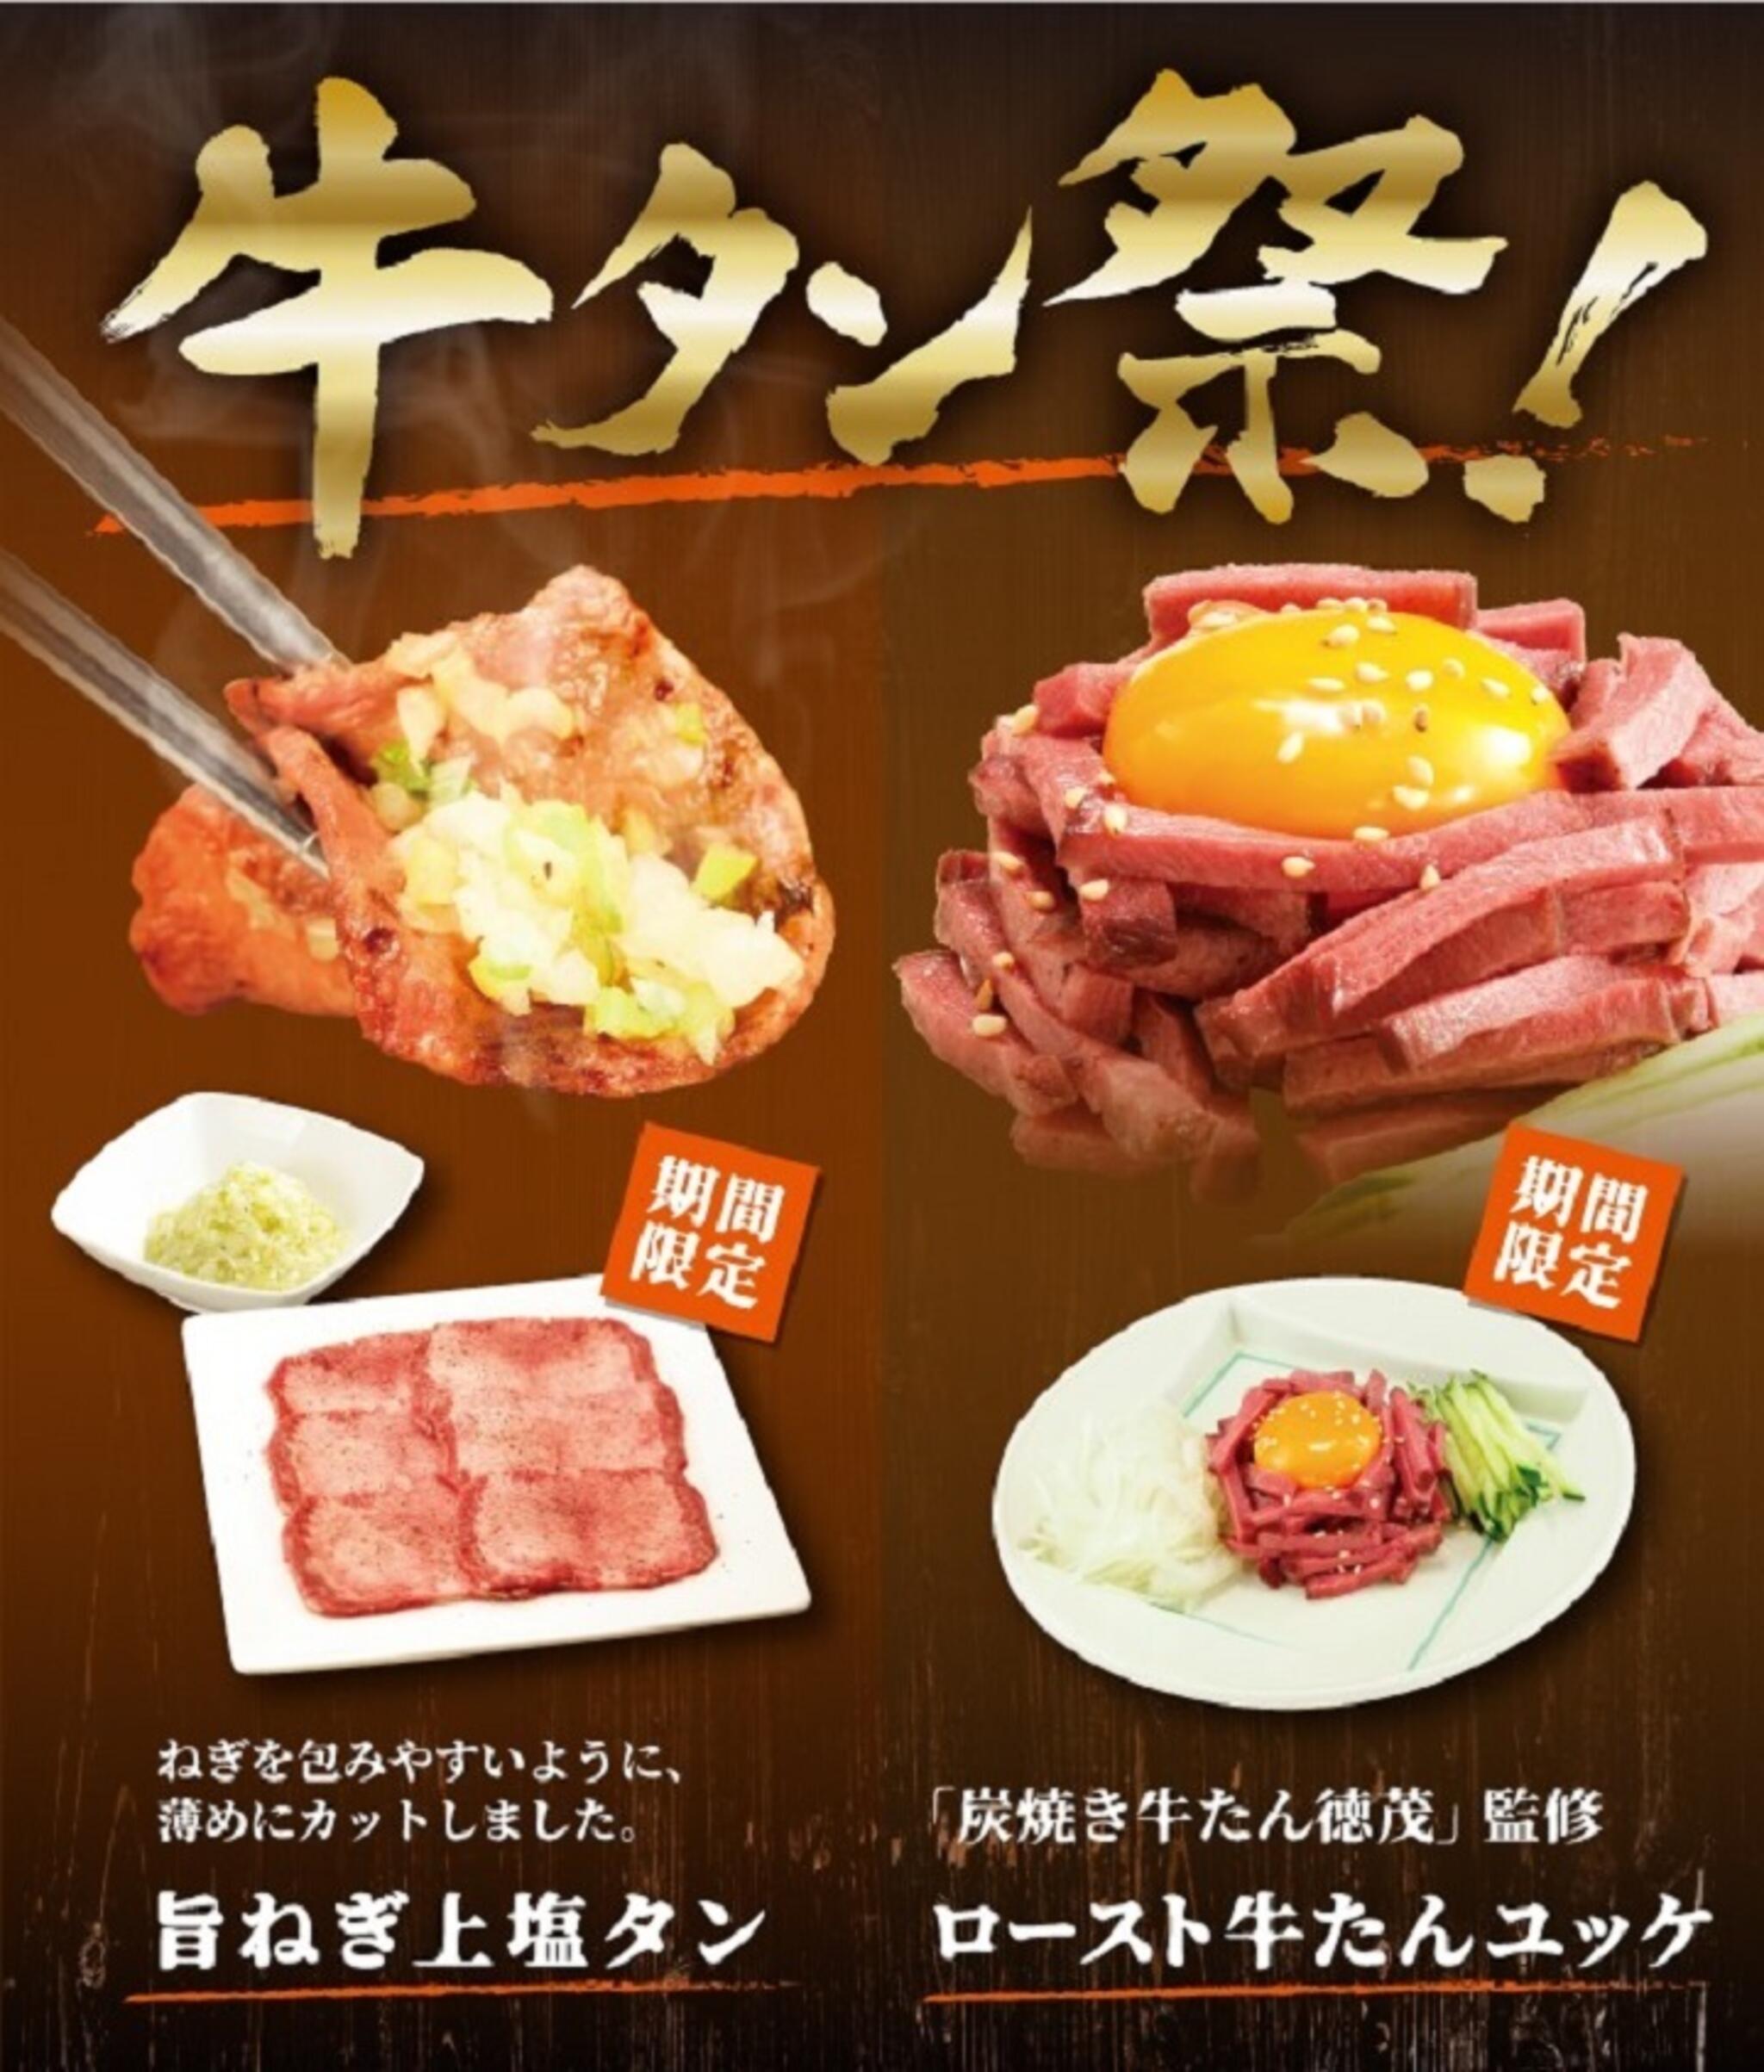 焼肉冷麺やまなか家 北上店からのお知らせ( 🎇やまなか家牛タン祭り🎇)に関する写真